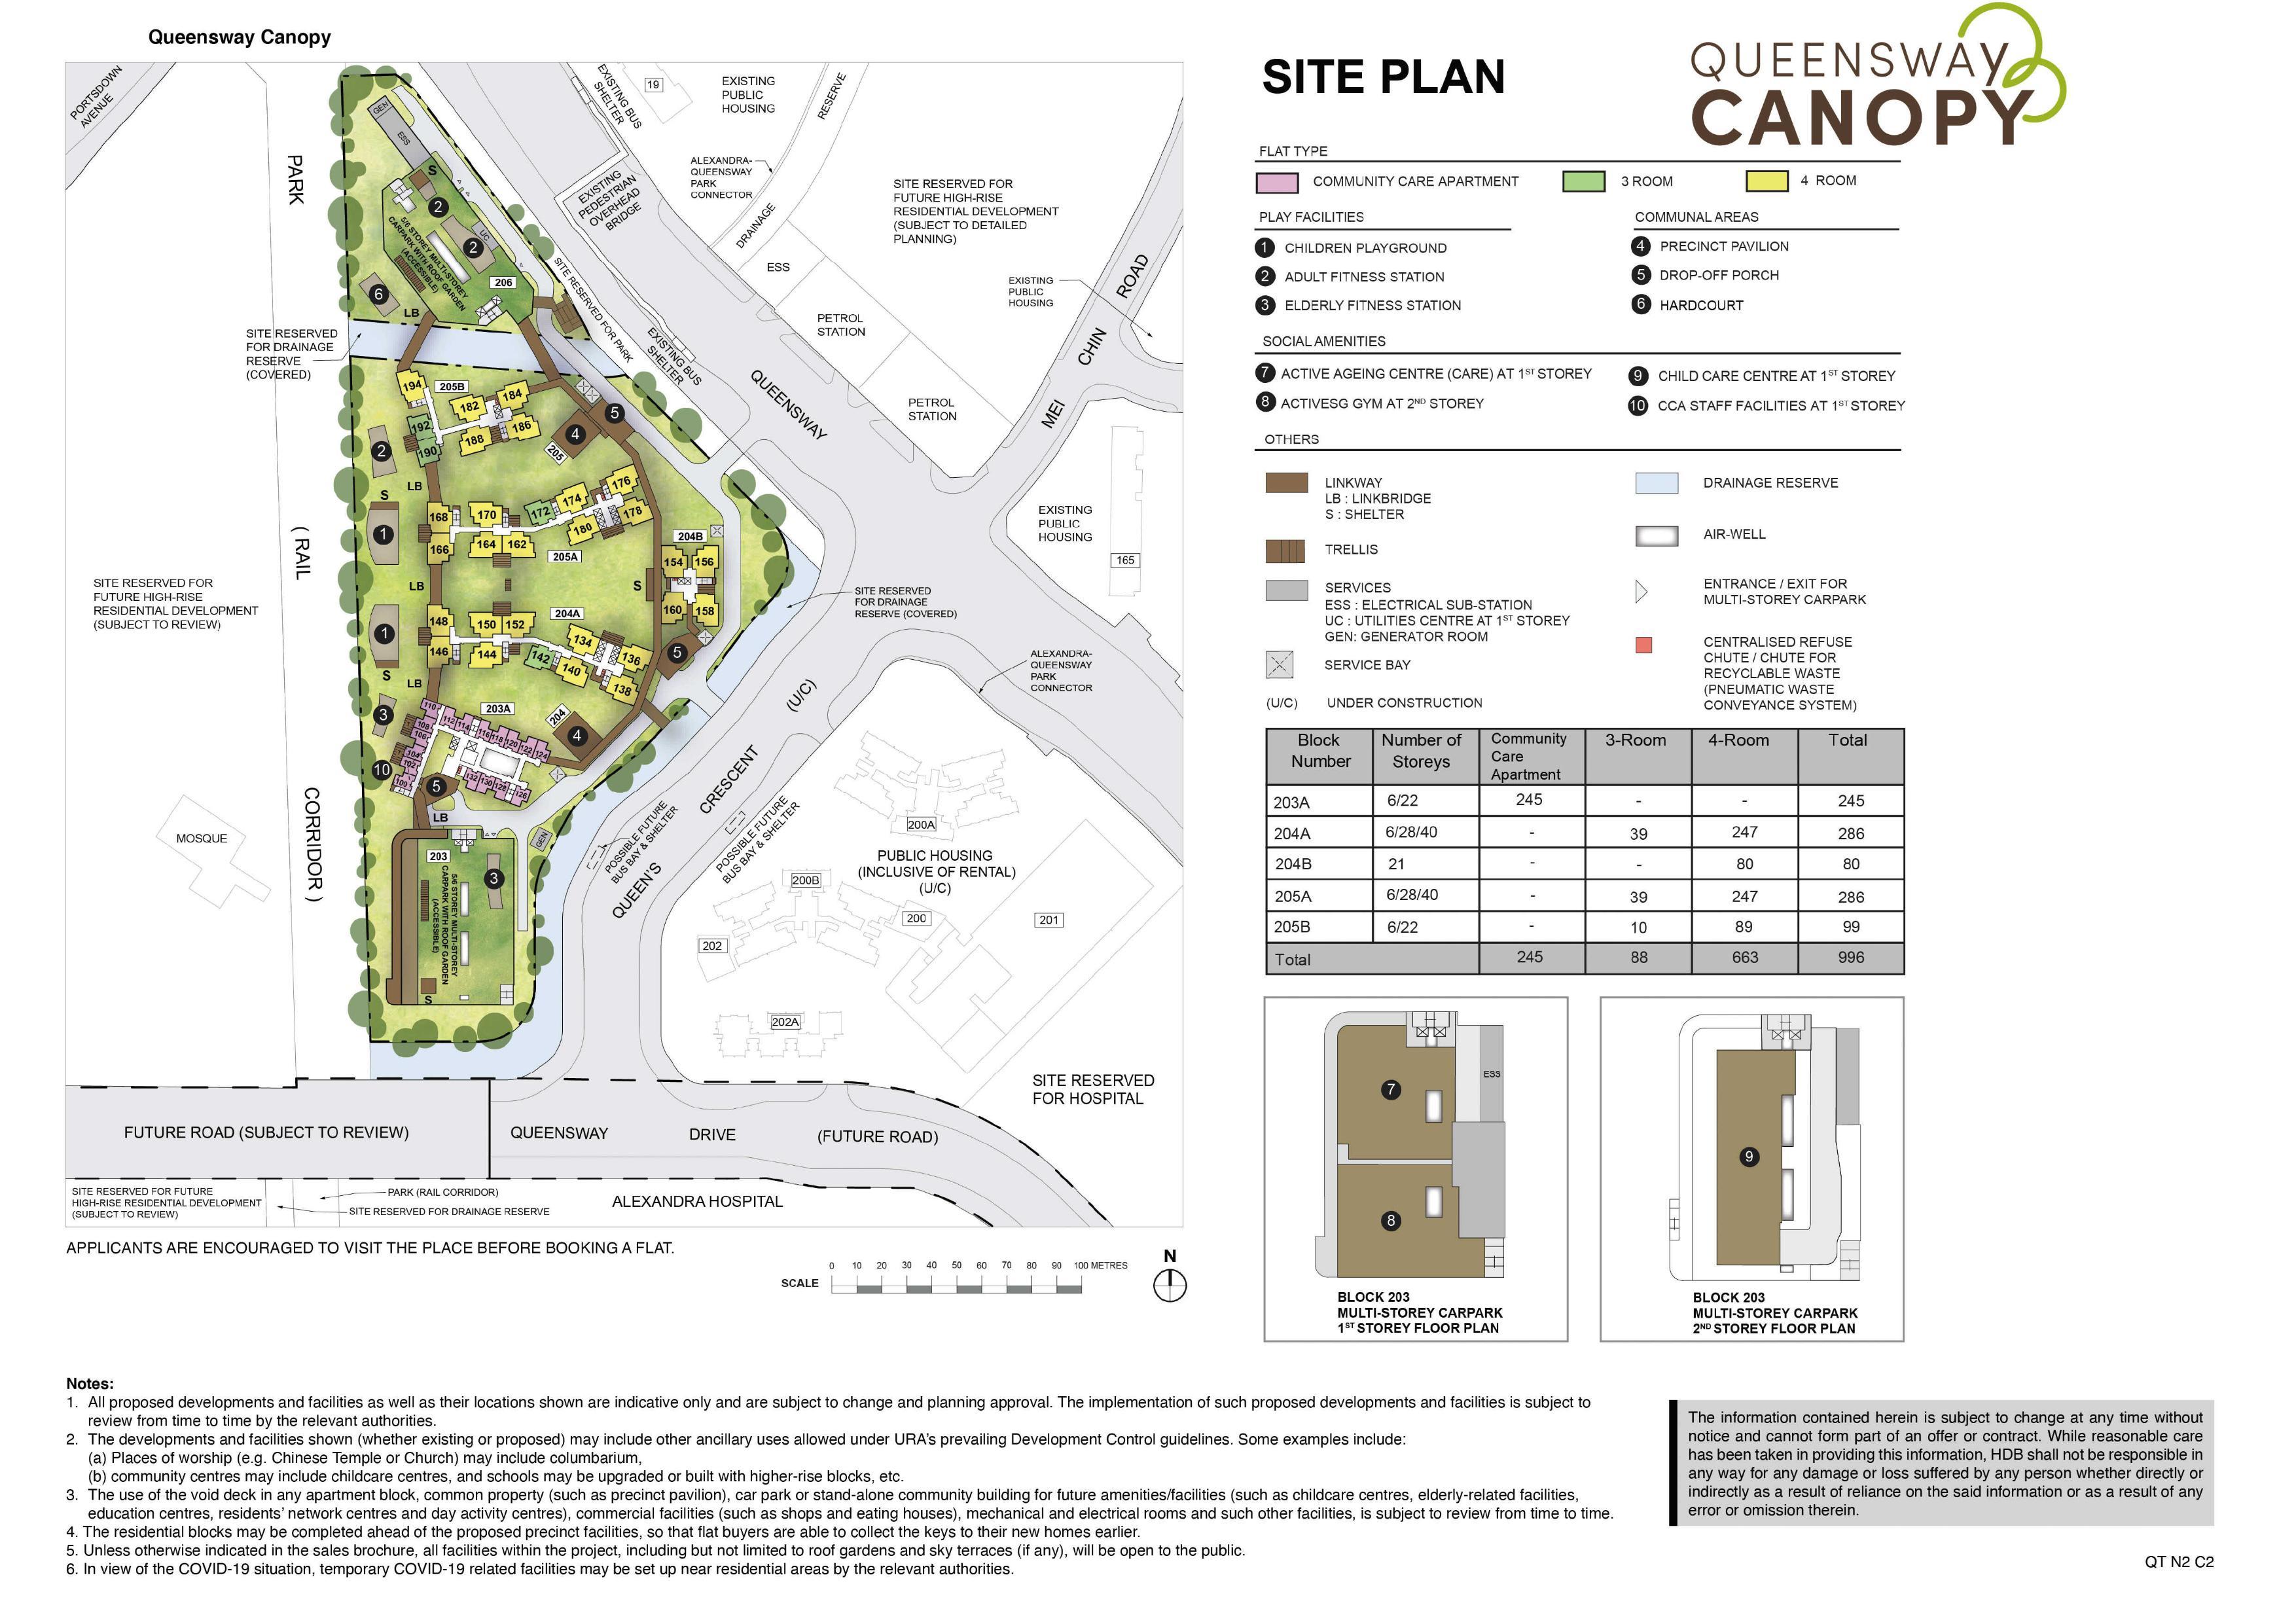 Queensway Canopy site-plan